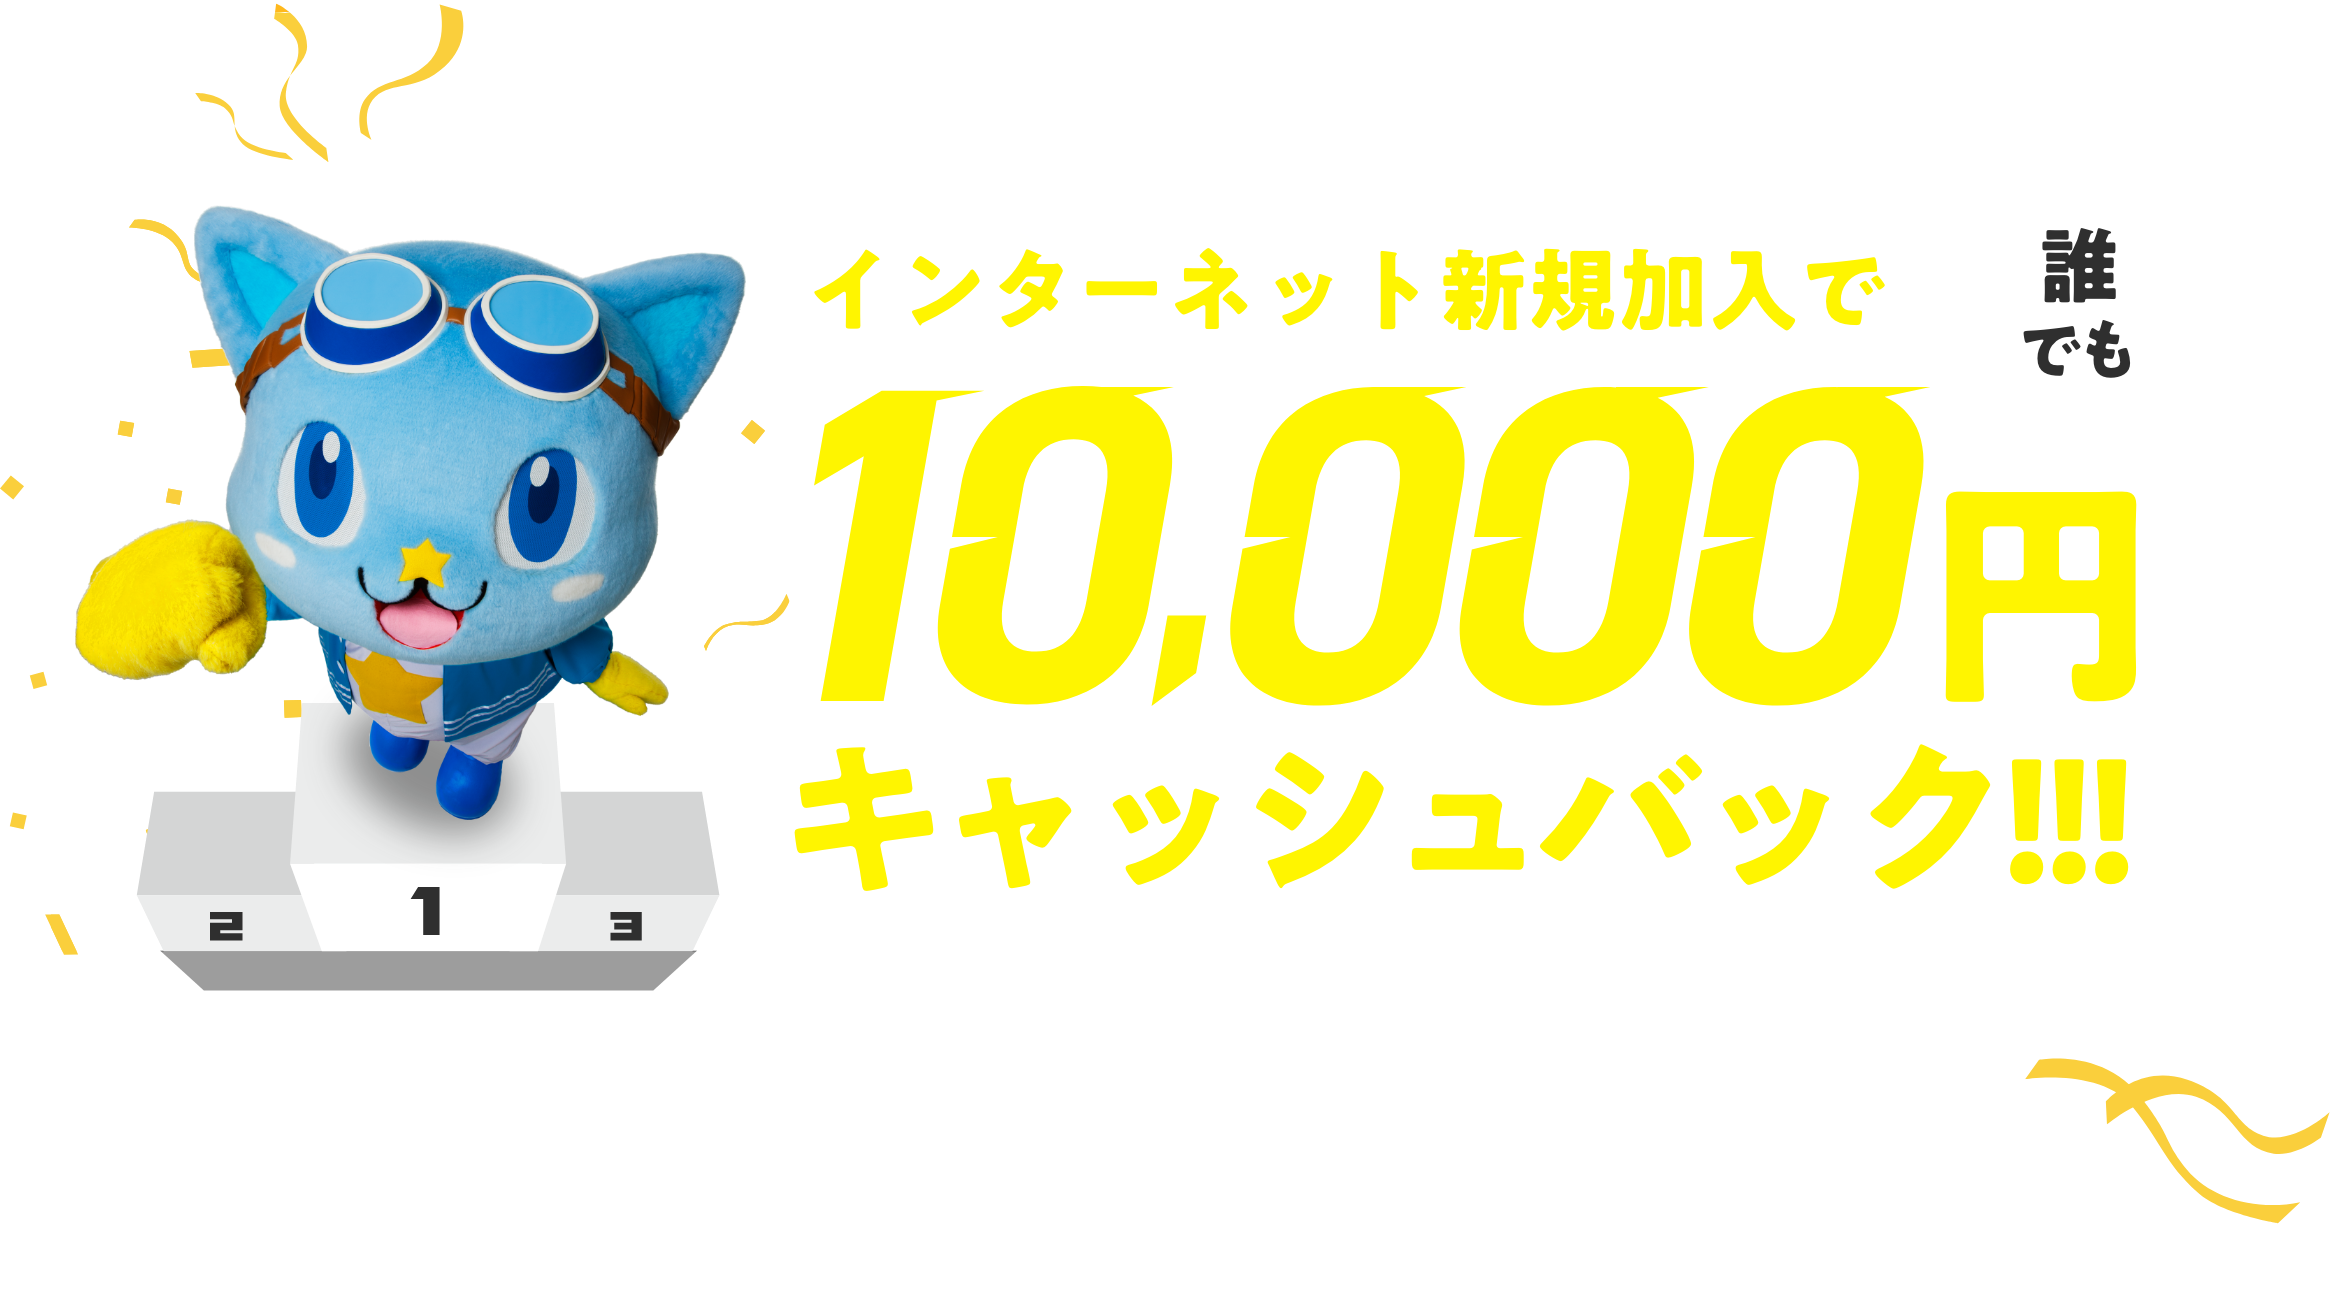 インターネット新規加入で誰でも10,000円をキャッシュバック!!!